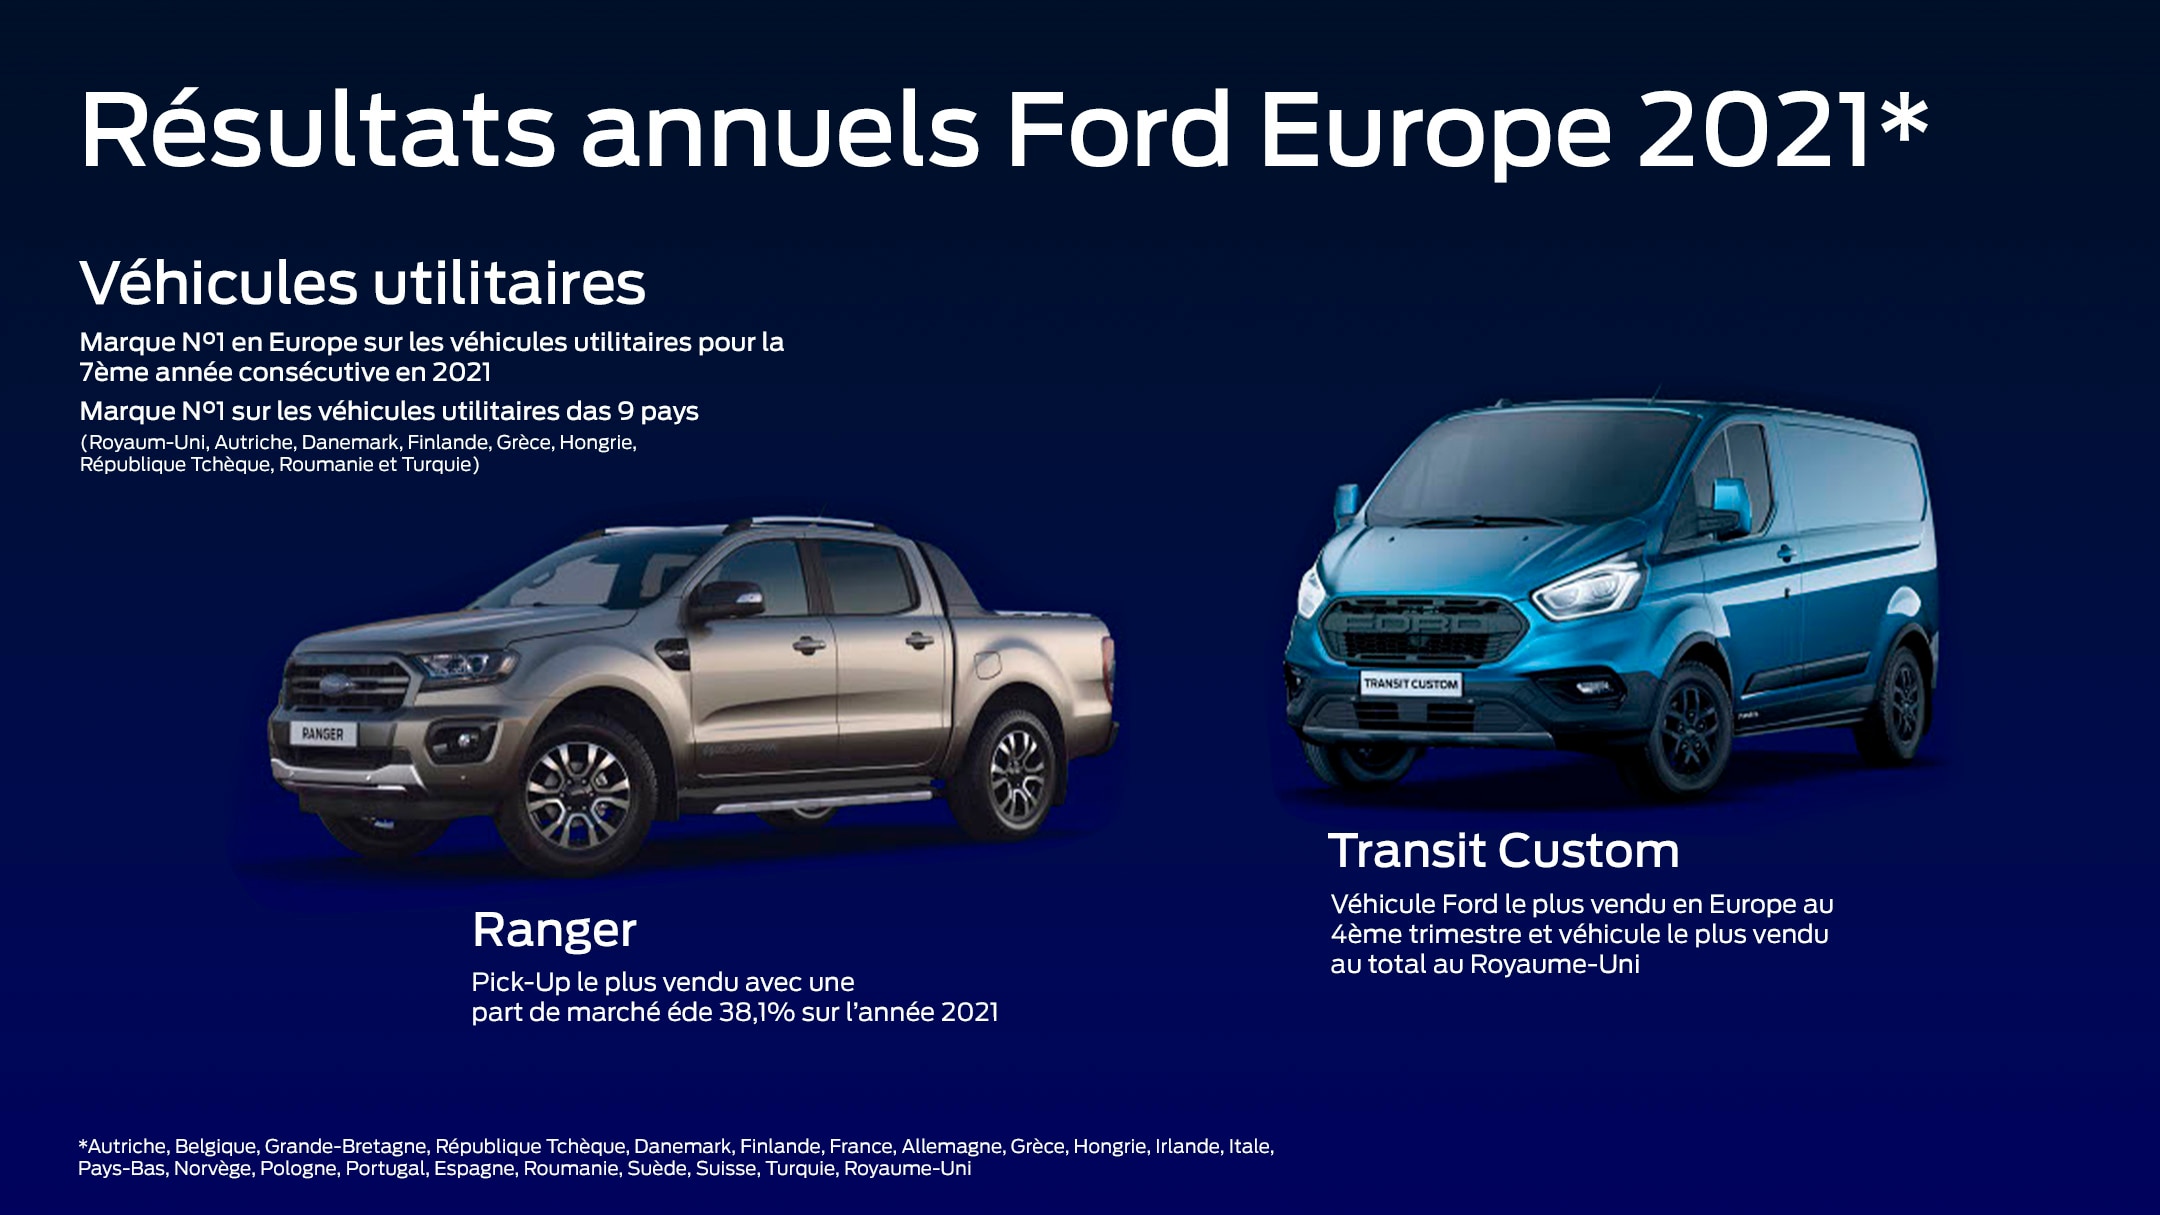 Le Site Officiel de Ford France